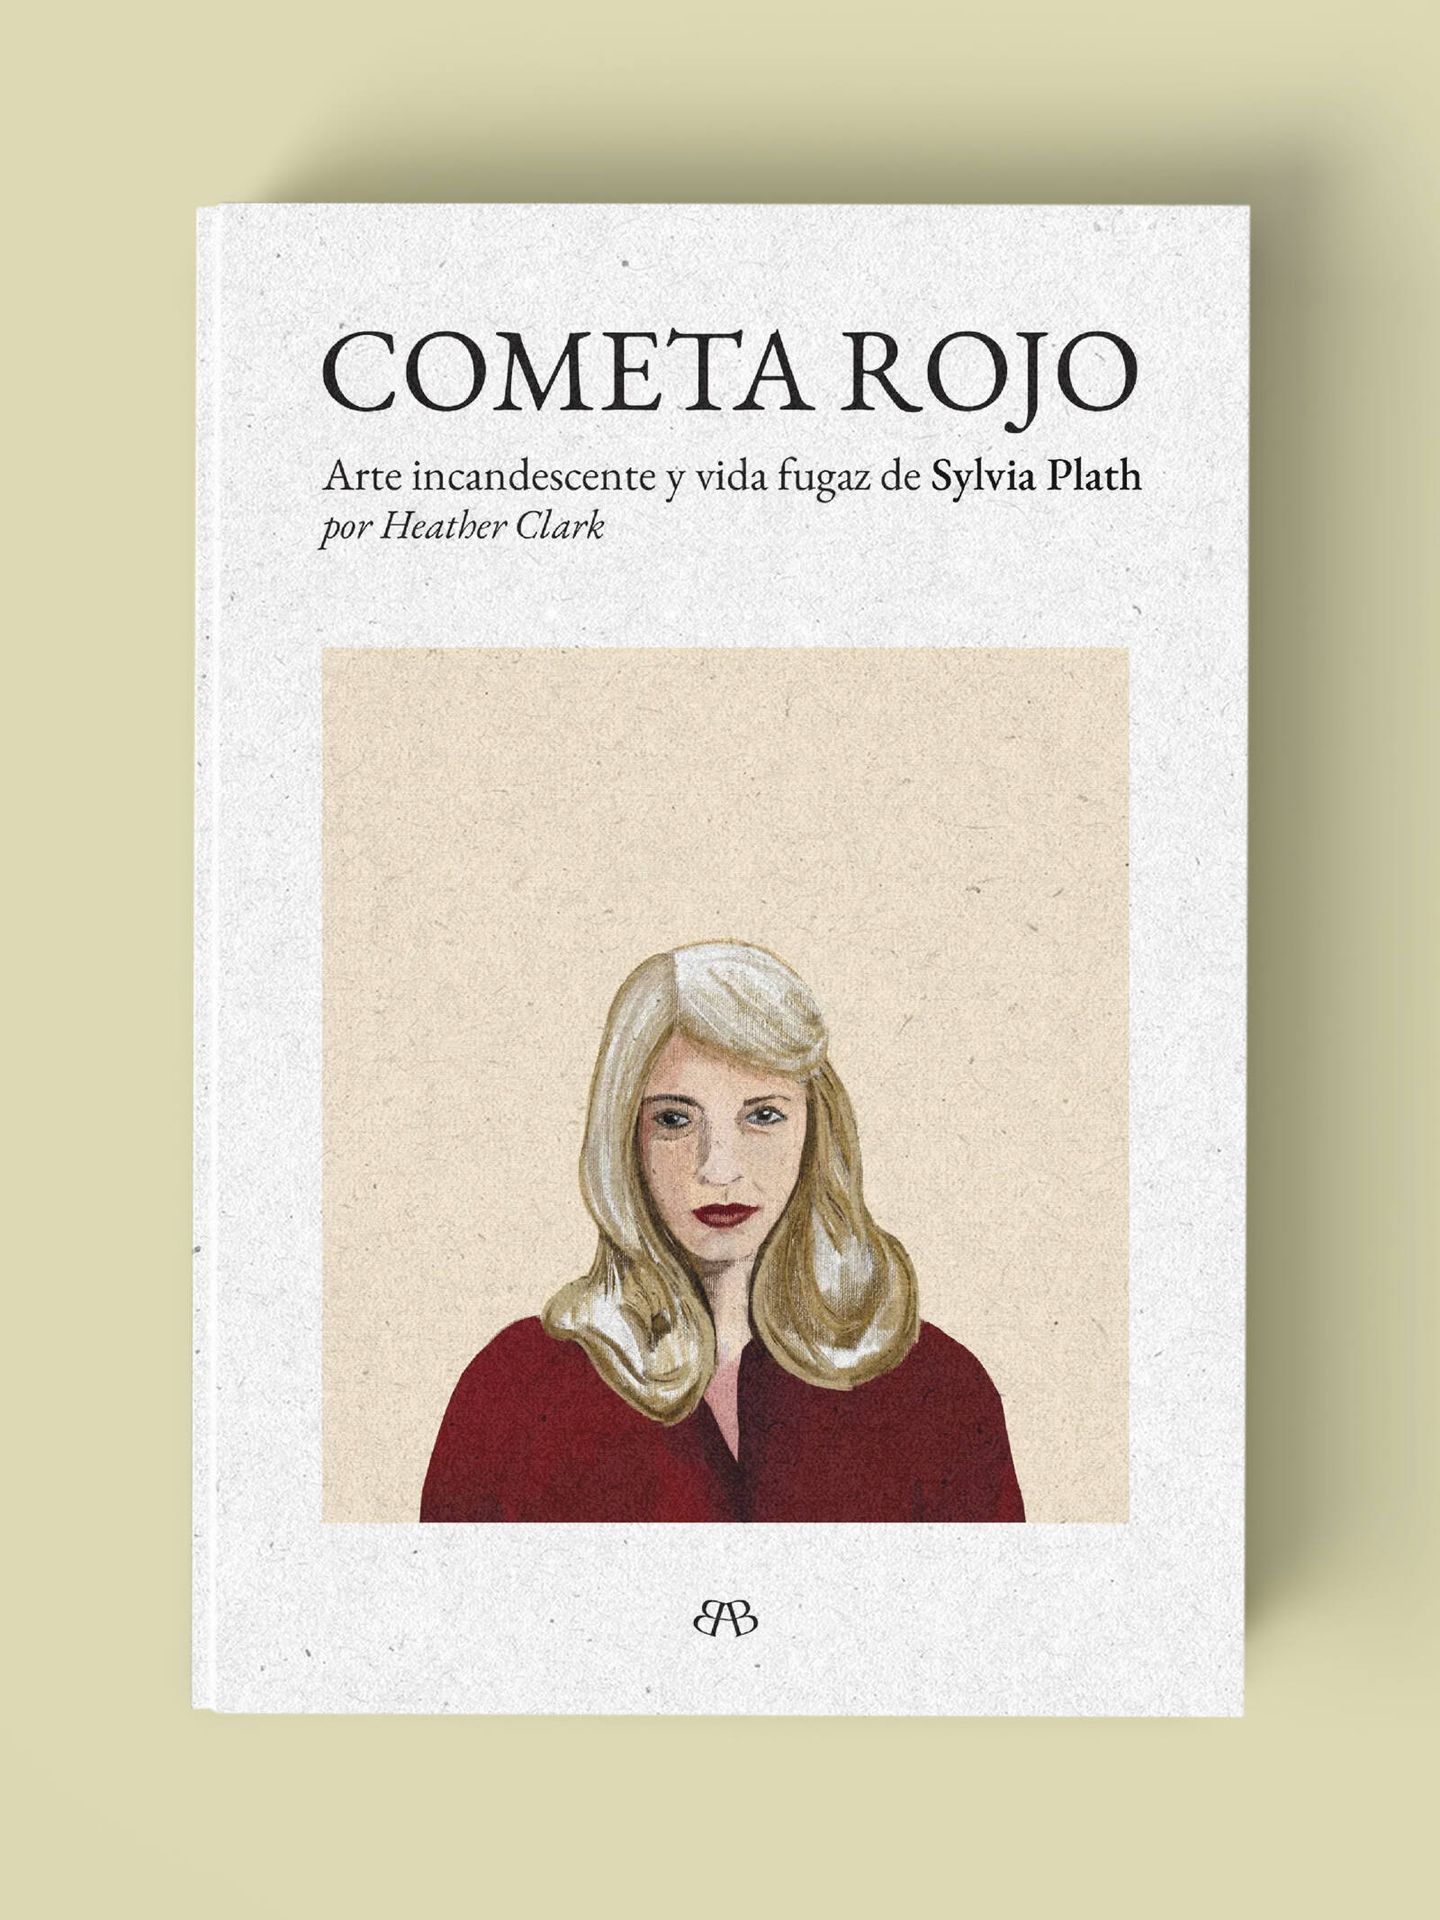 'Cometa rojo', la biografía de Sylvia Plath obra de Heather Clark.